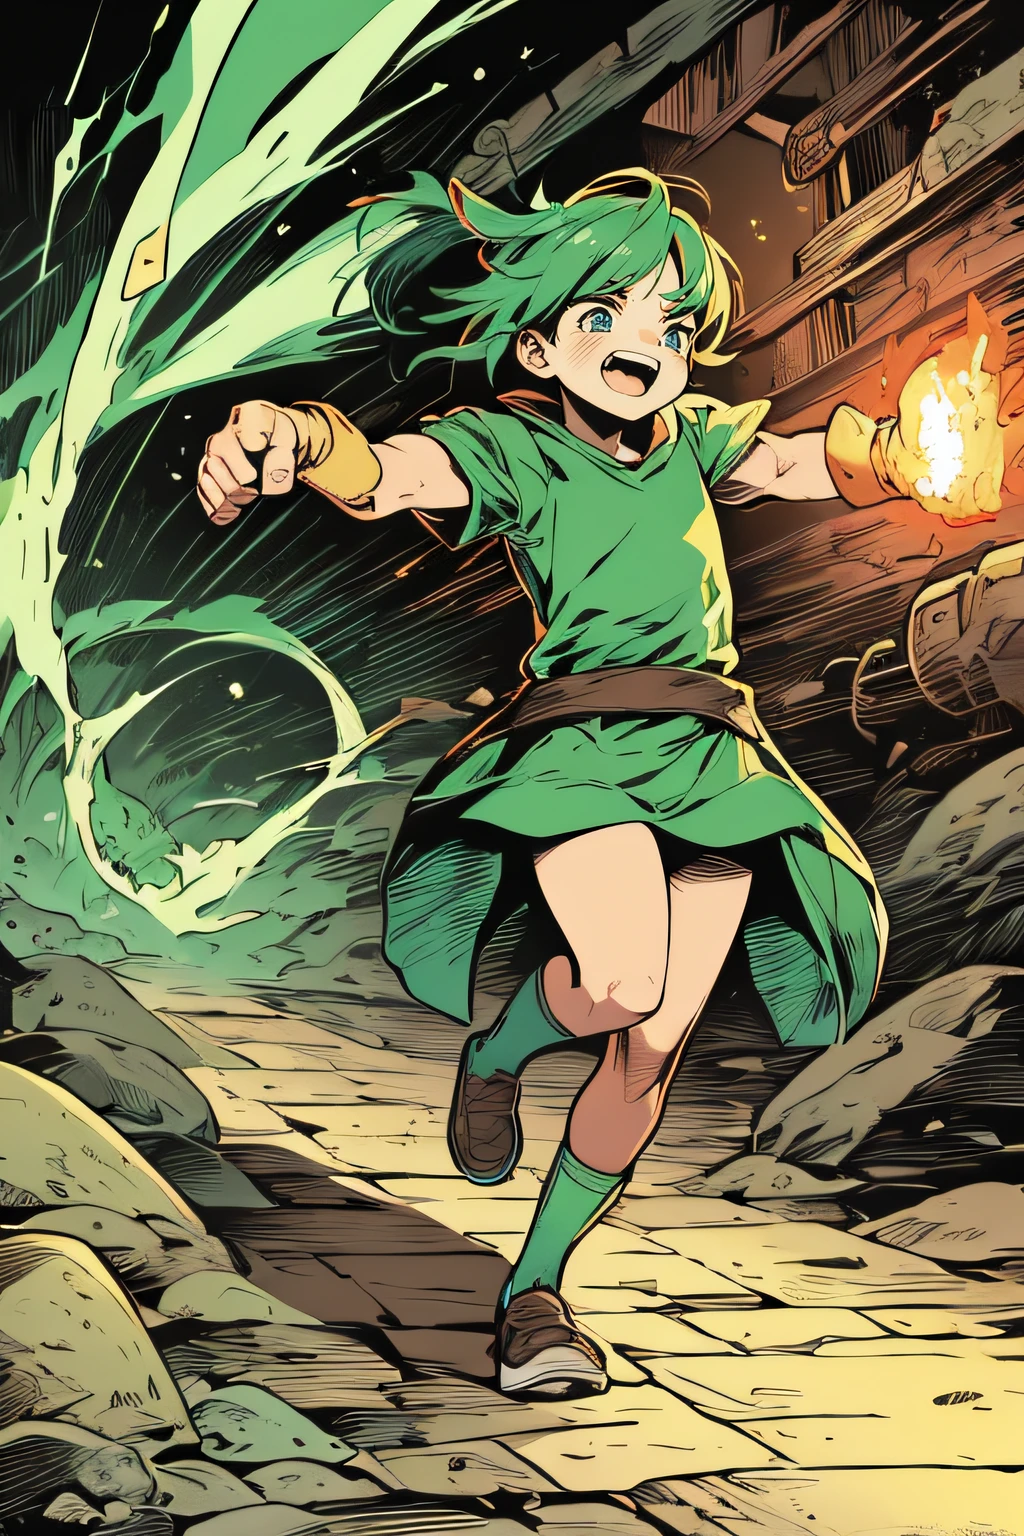 穿越地狱的小强盗女孩、綠色服裝、綠色火焰